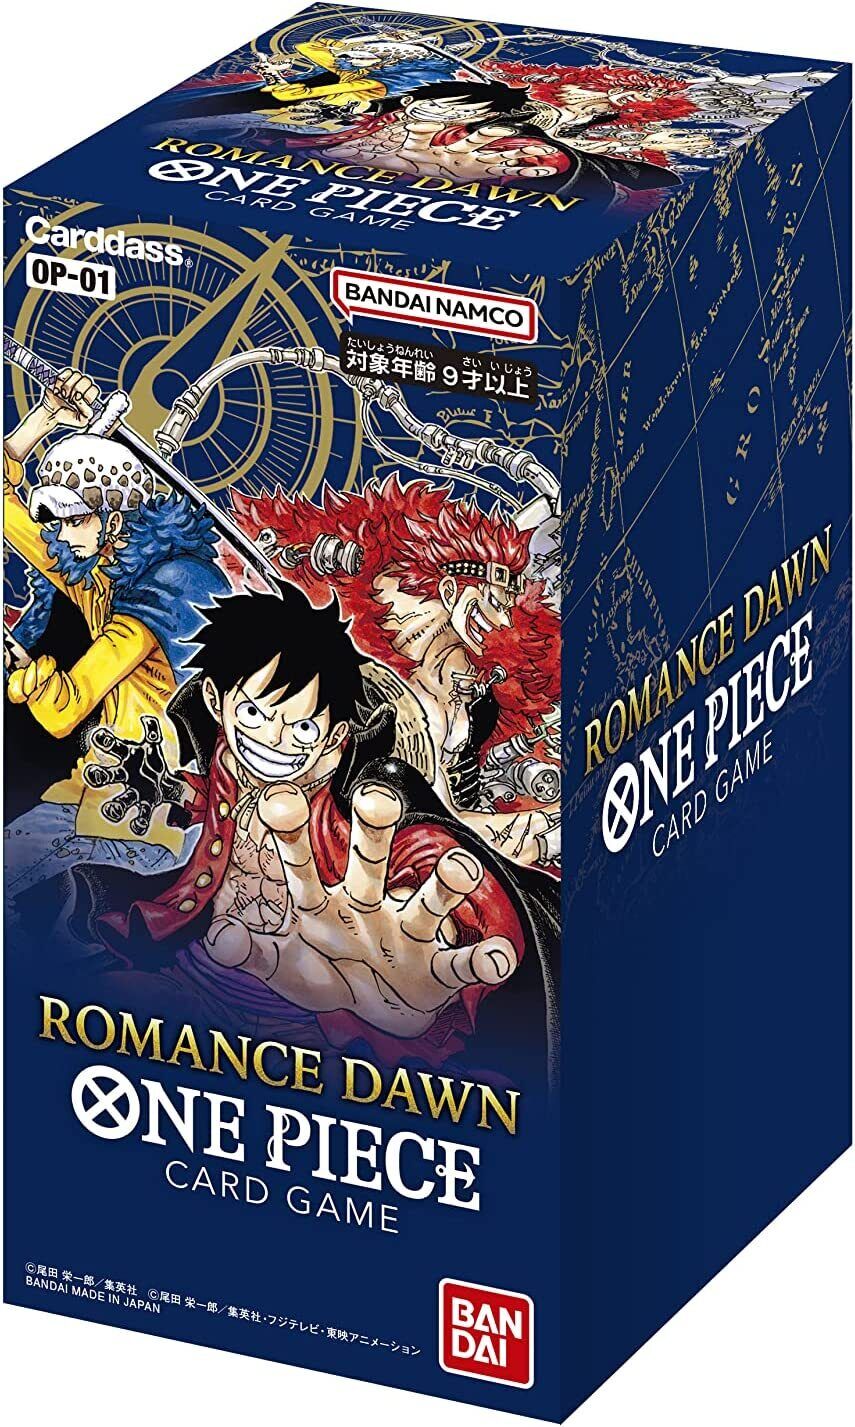 One Piece, Romance Dawn!!